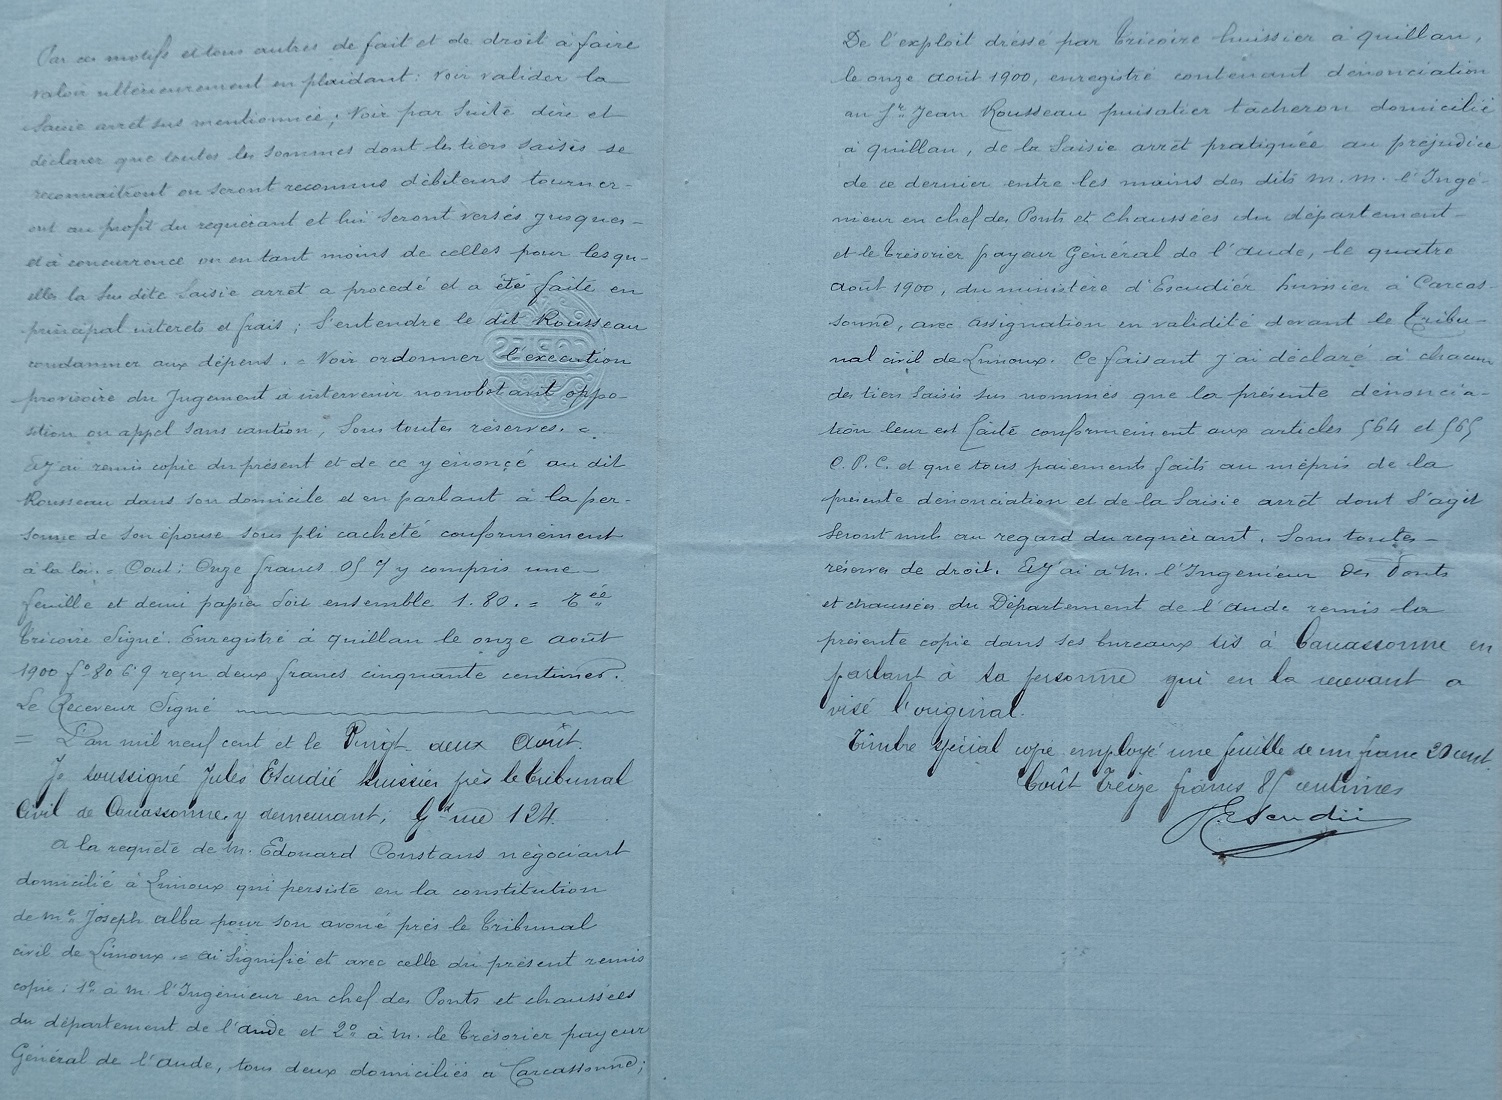 04 Août 1900 - Acte d'huissier à l'encontre de Jean Rousseau pour prélever sur sommes dû pour la construction des puits - 5